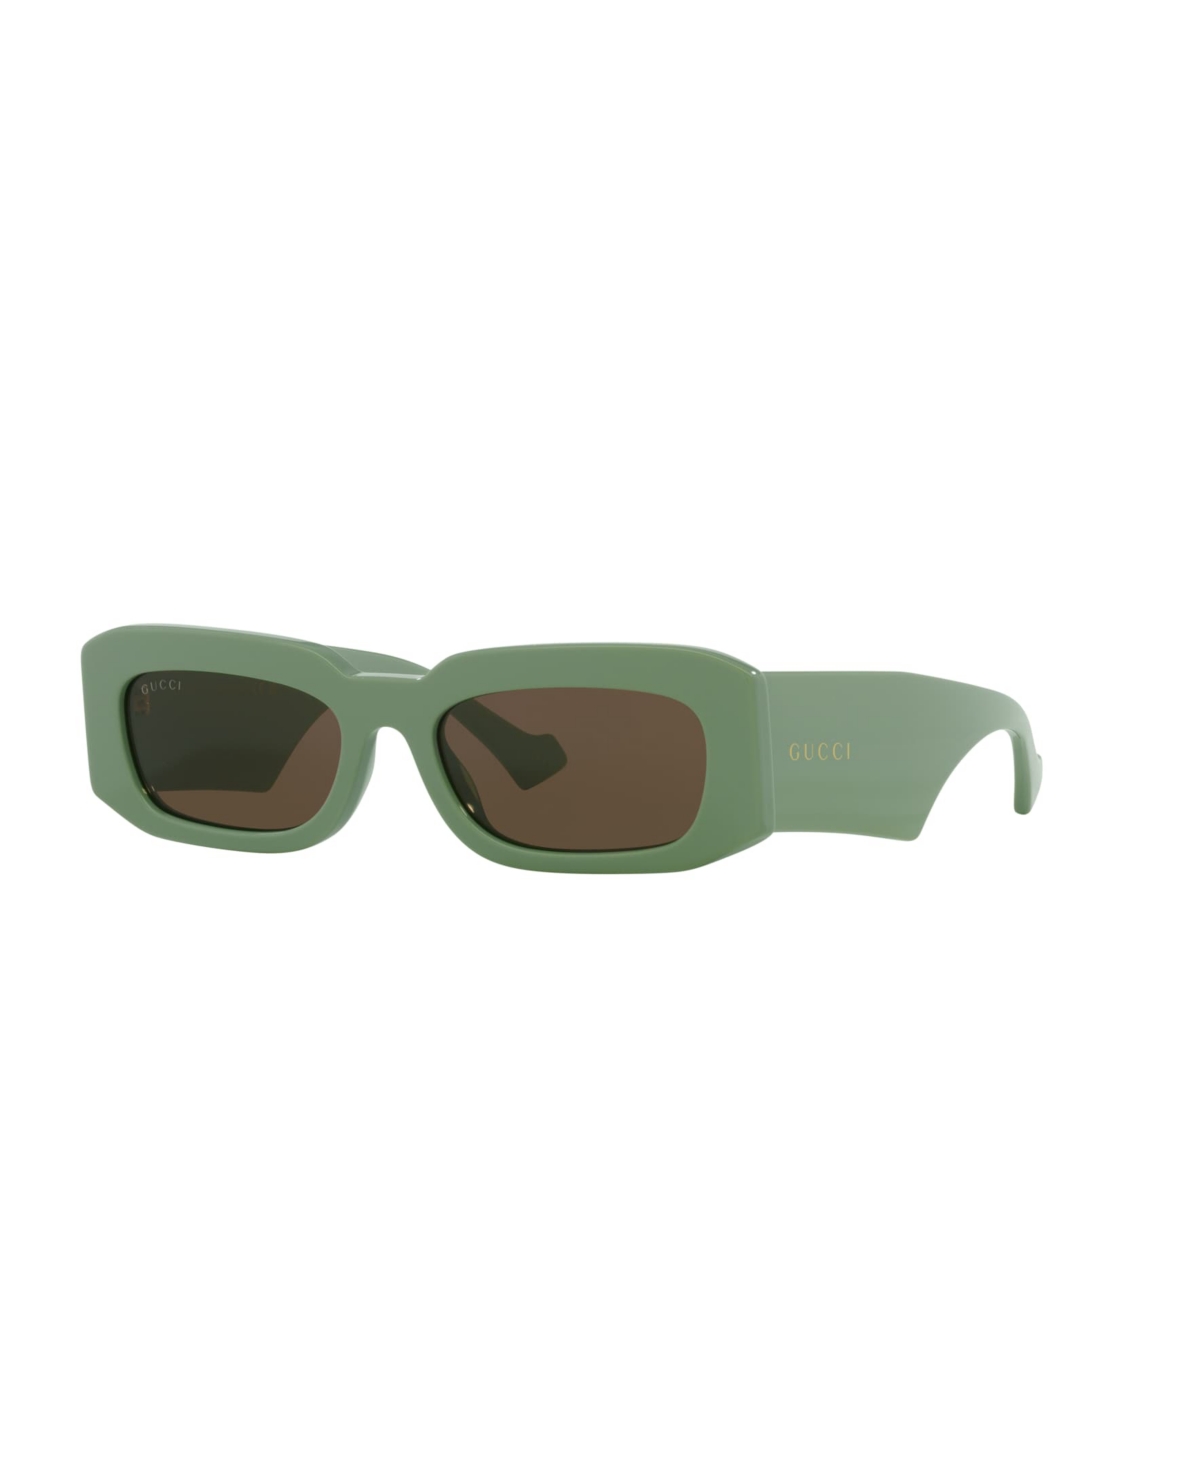 Men's Sunglasses, GG1426S - Green